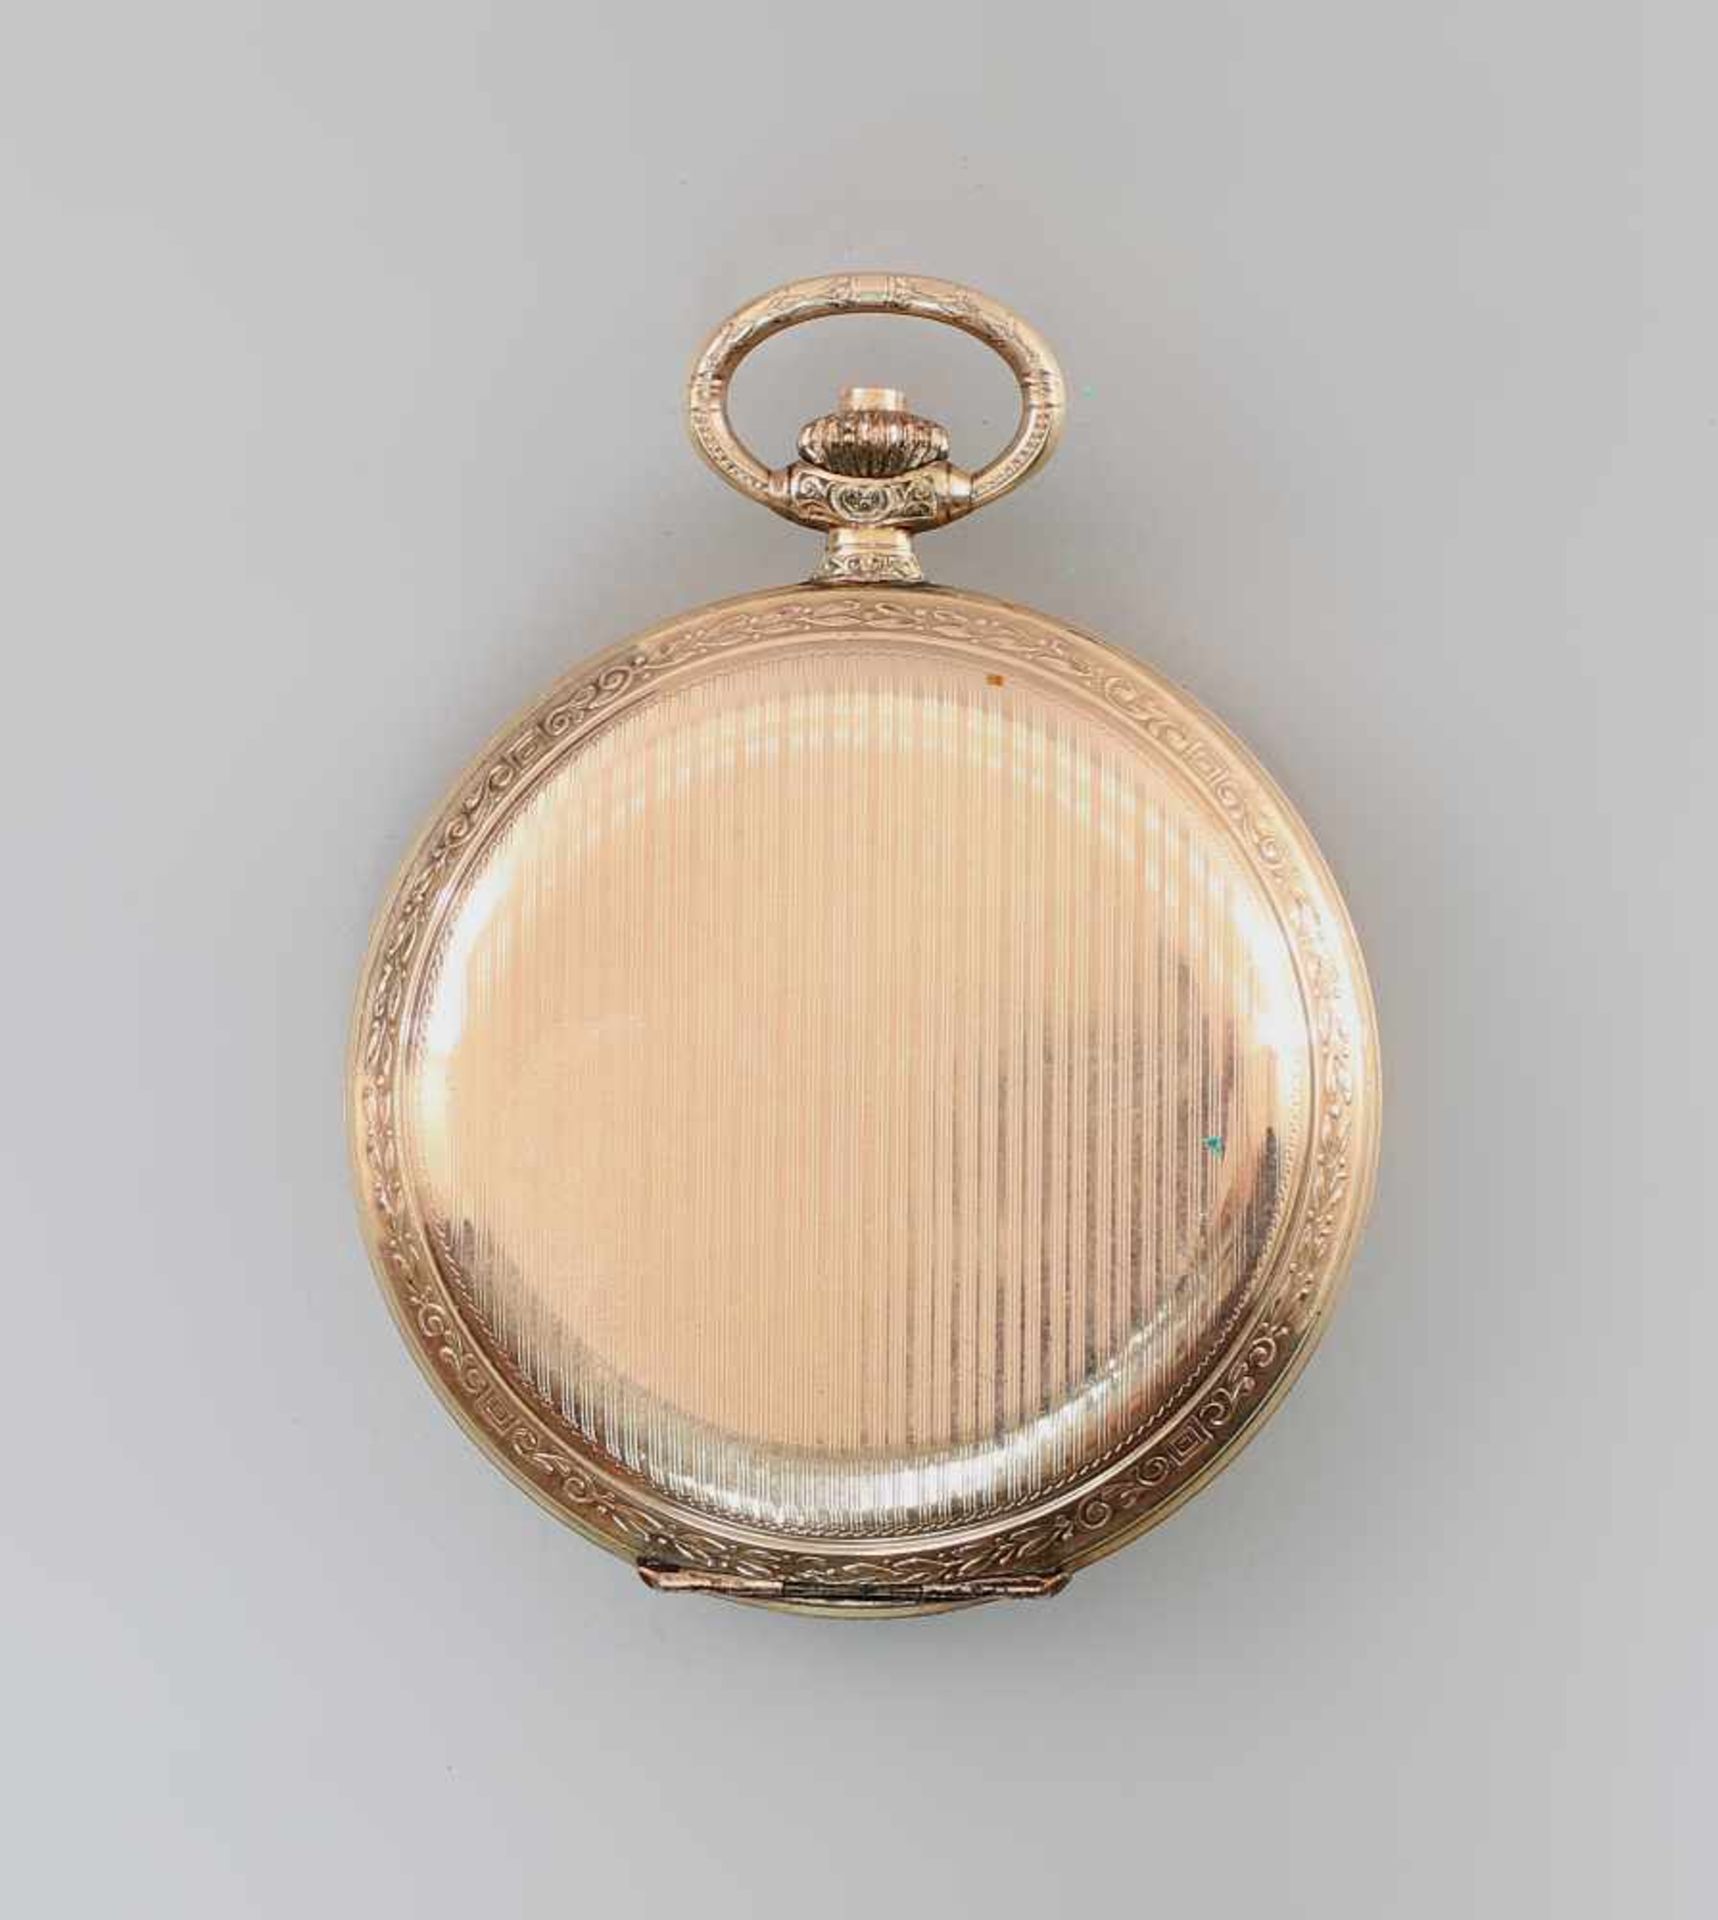 Vergoldete Savonette Sprungdeckel-Taschenuhr Alpinaum 1930, Savonette, vergoldetes Gehäuse (Walz- - Bild 3 aus 5